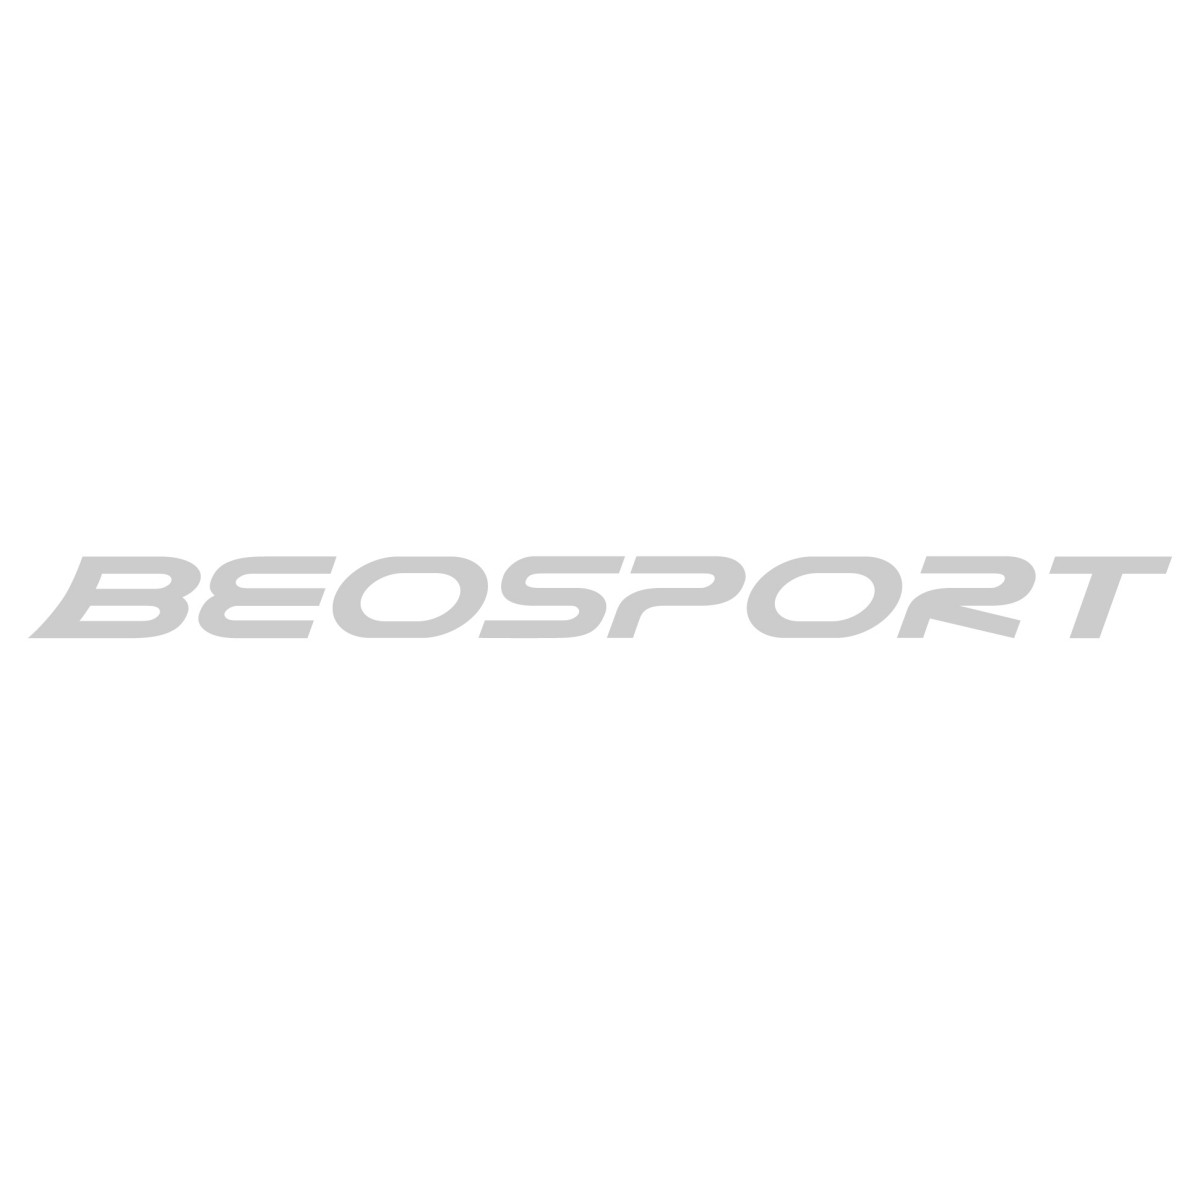 Snowboard Oprema | Odeća i Obuća za Snowboard | Beosport.com